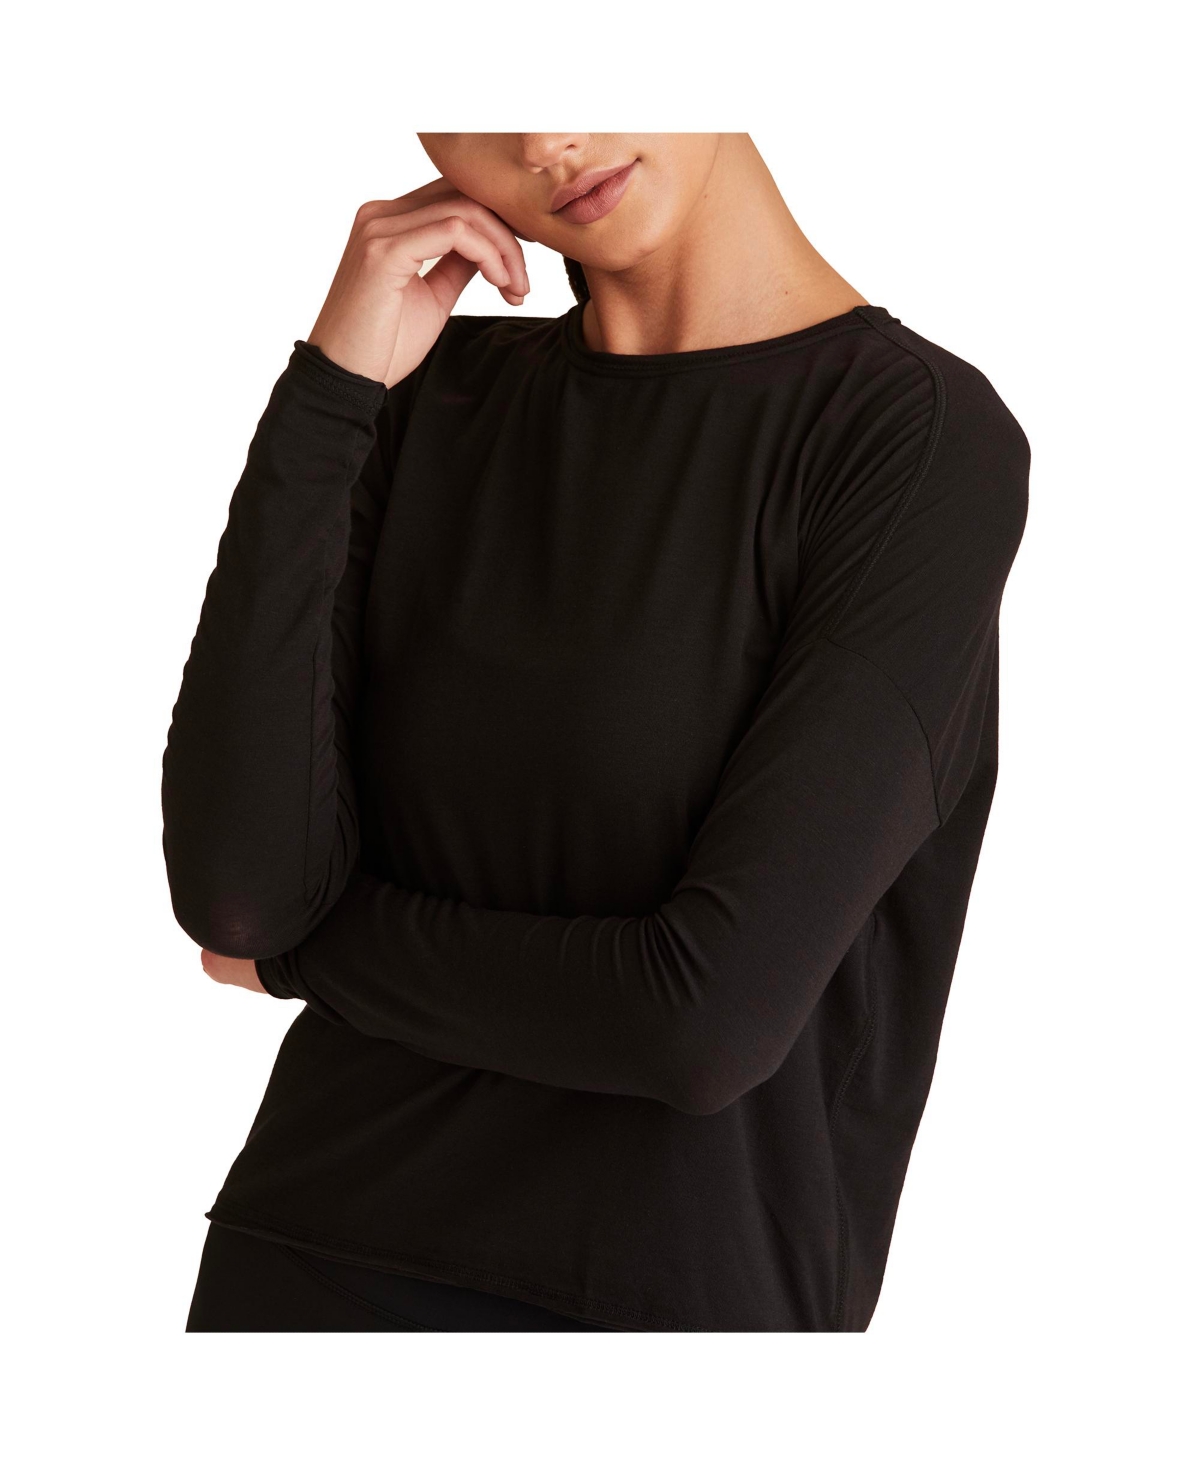  Women's Regular Size Open Back Long Sleeve T-Shirt